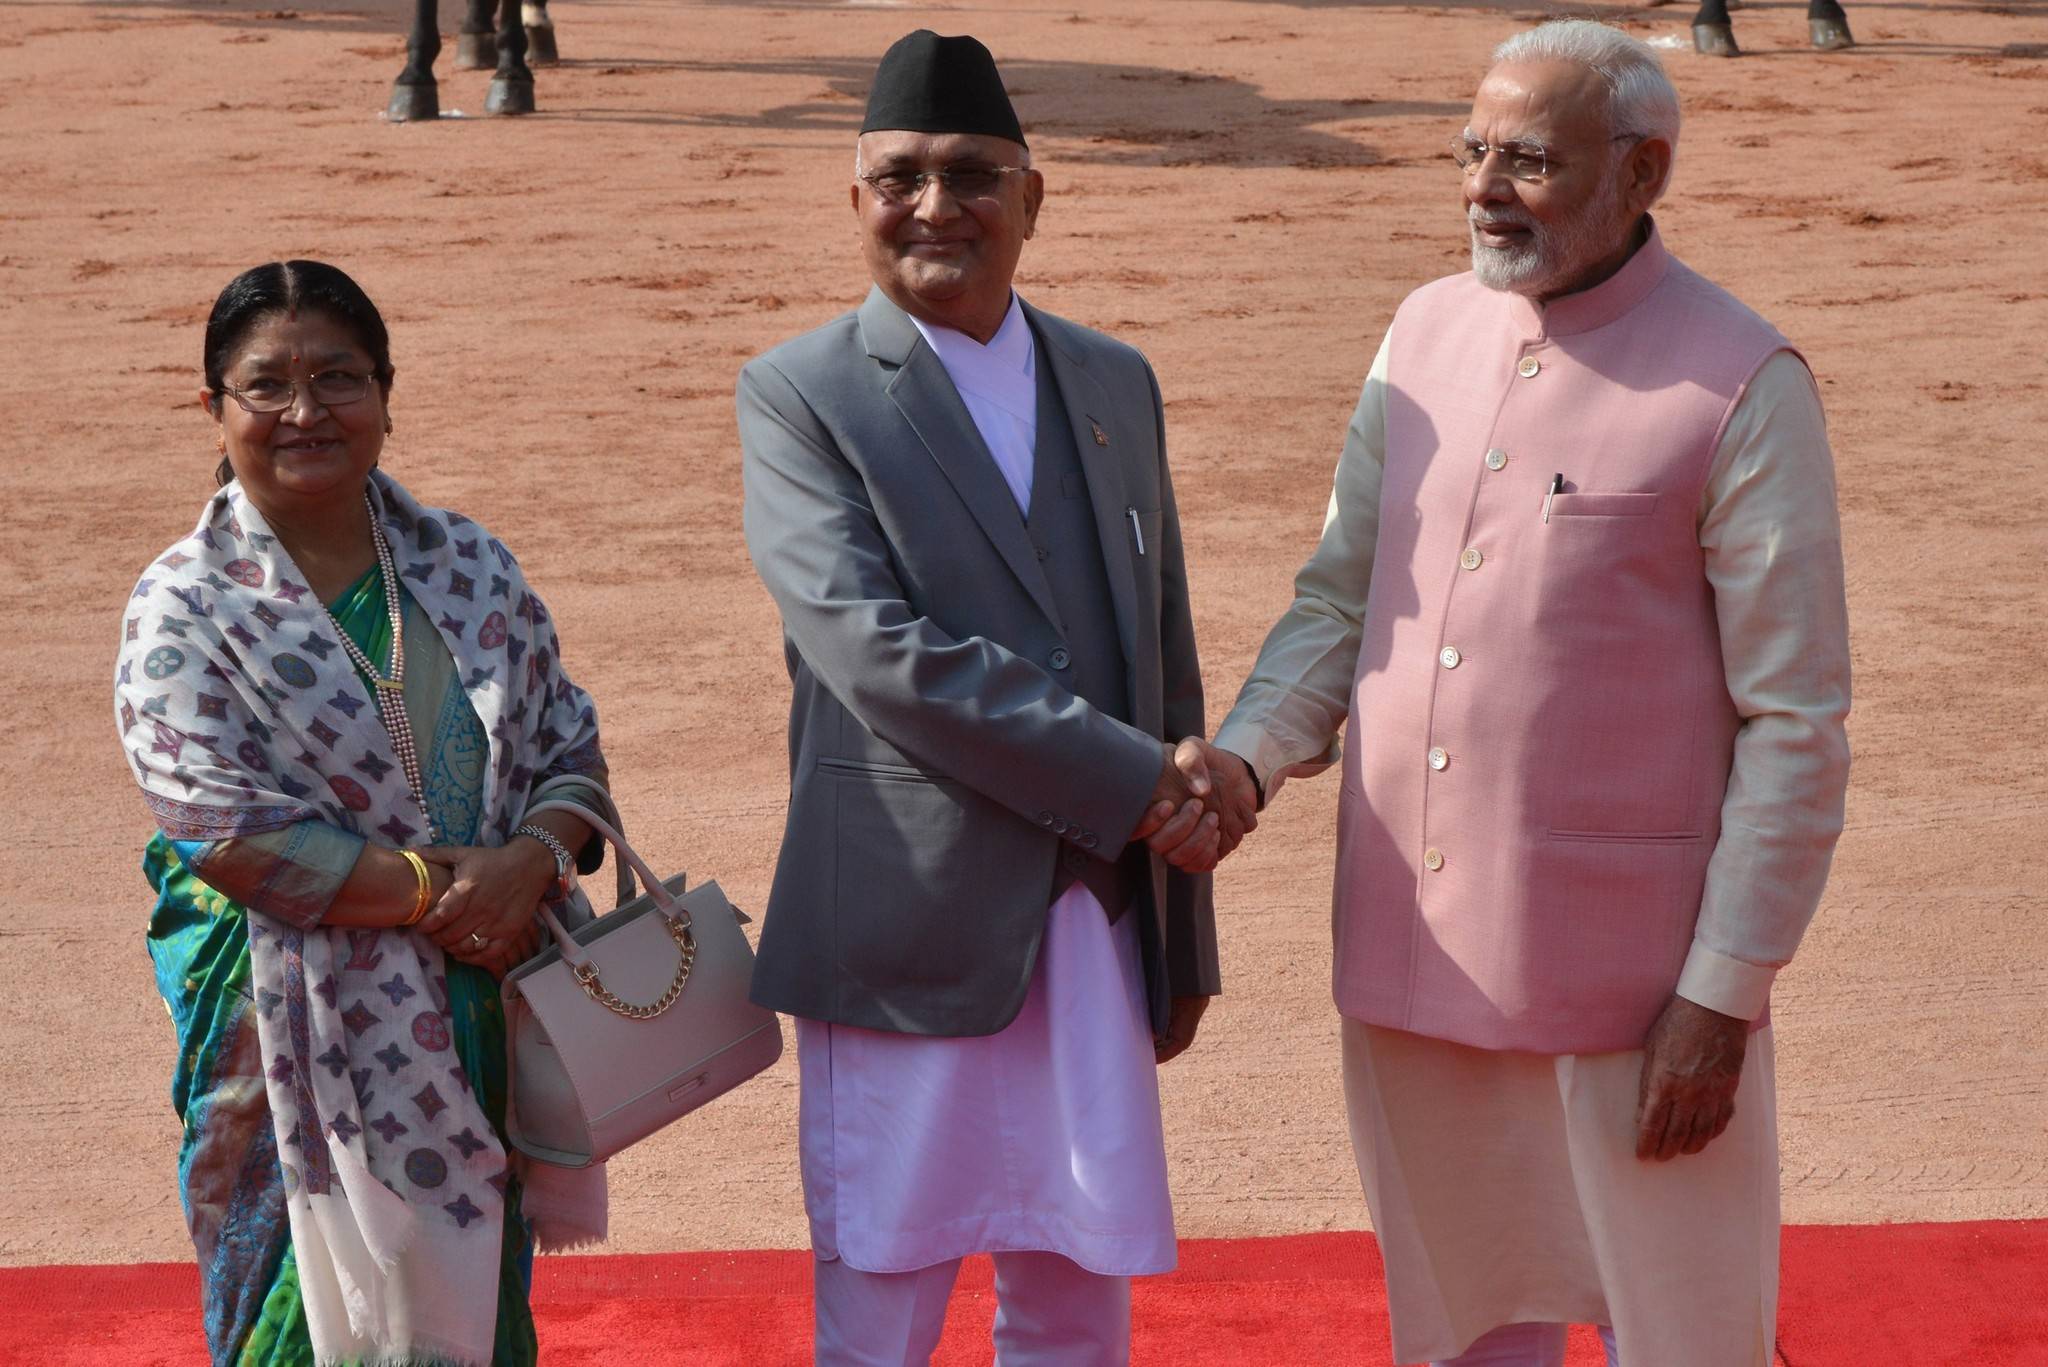 尼泊尔总统宣布解散议会,明年分两阶段举行众议院选举